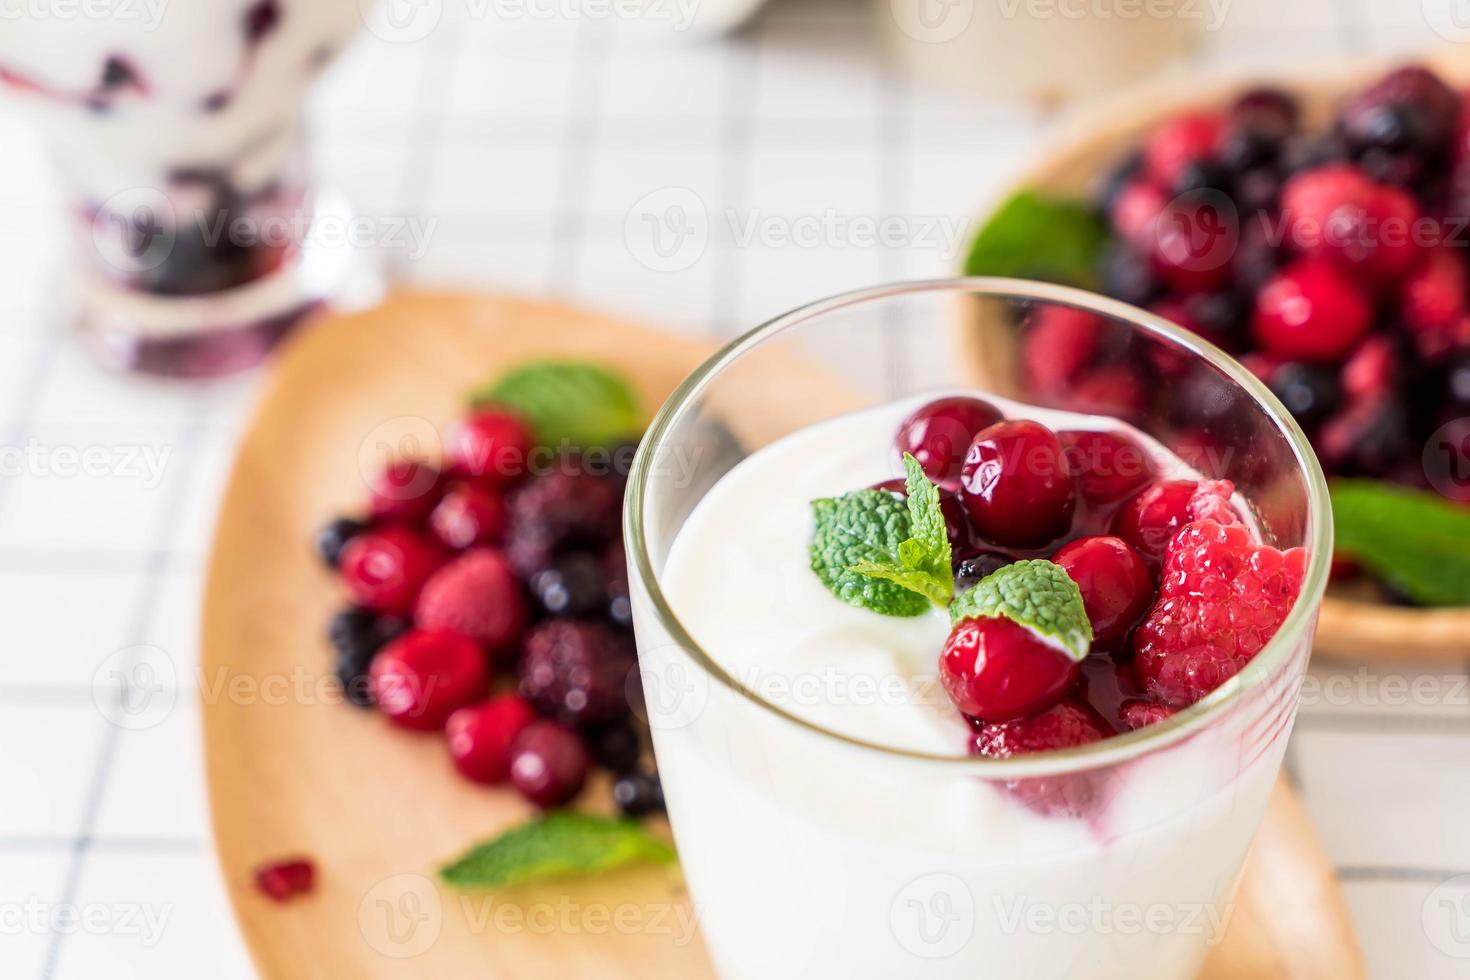 yogur con bayas mixtas en la mesa foto